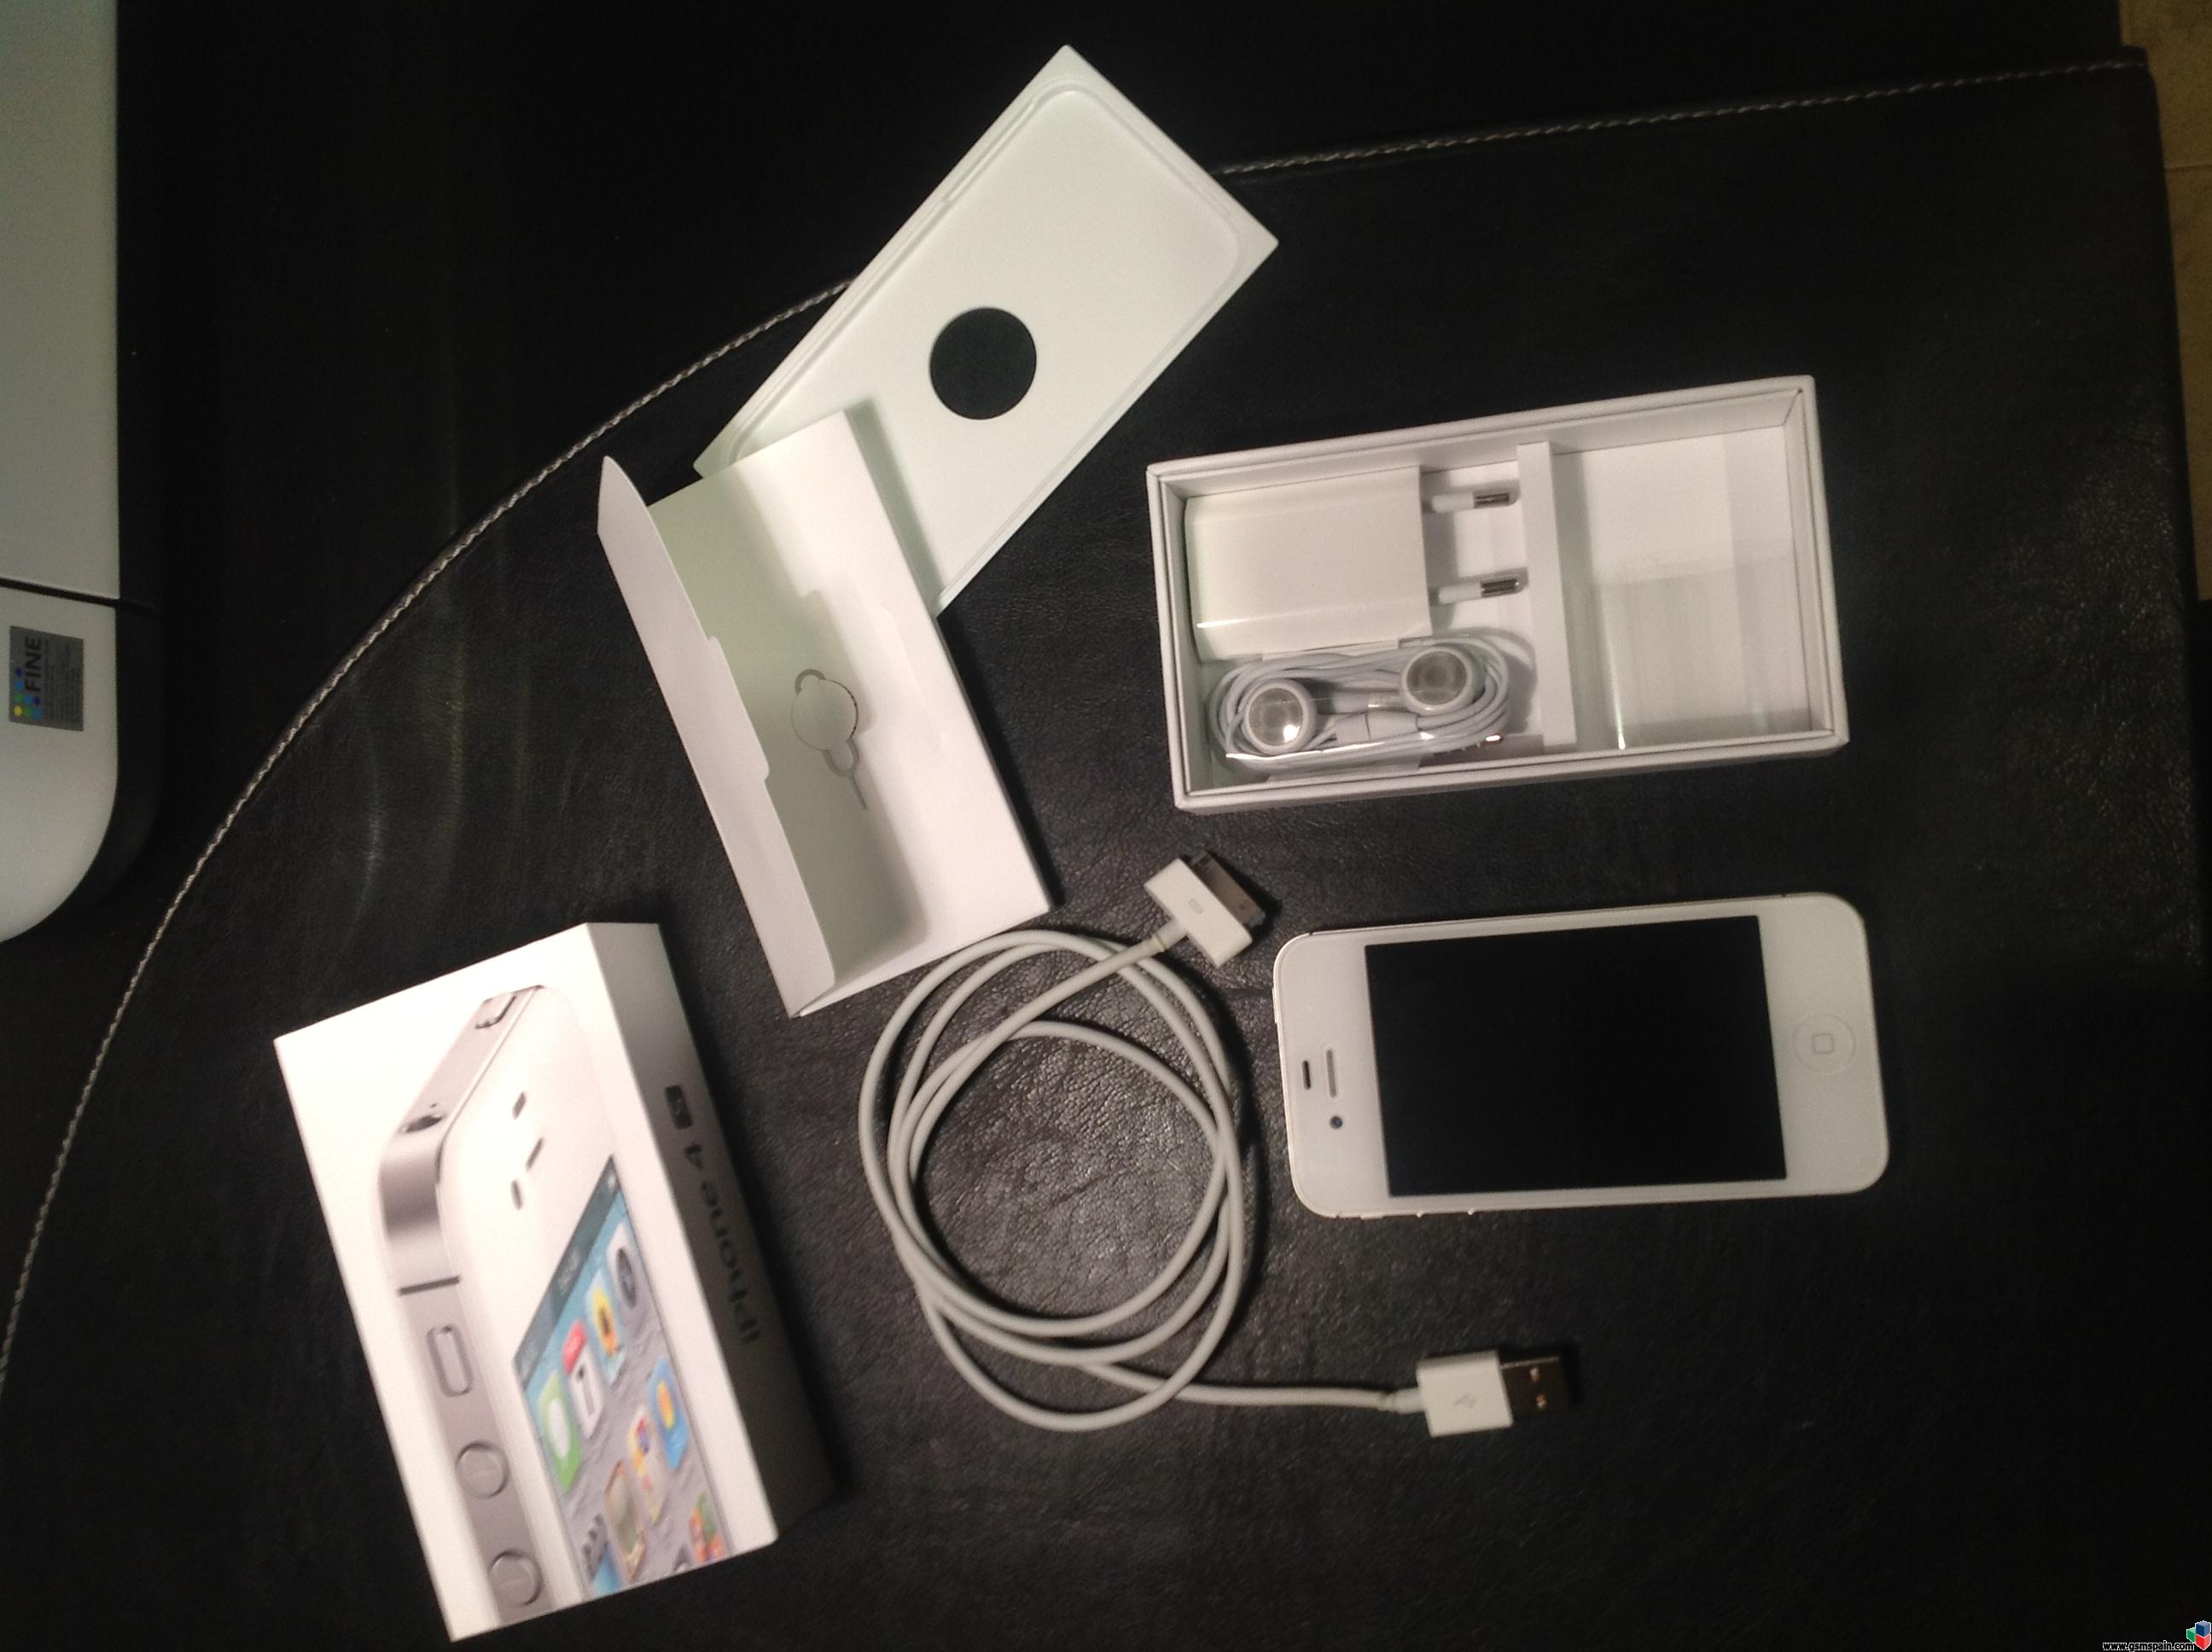 [VENDO] iPhone 4s 32gb  blanco libre con factura y accesorios (25 das de applecare)